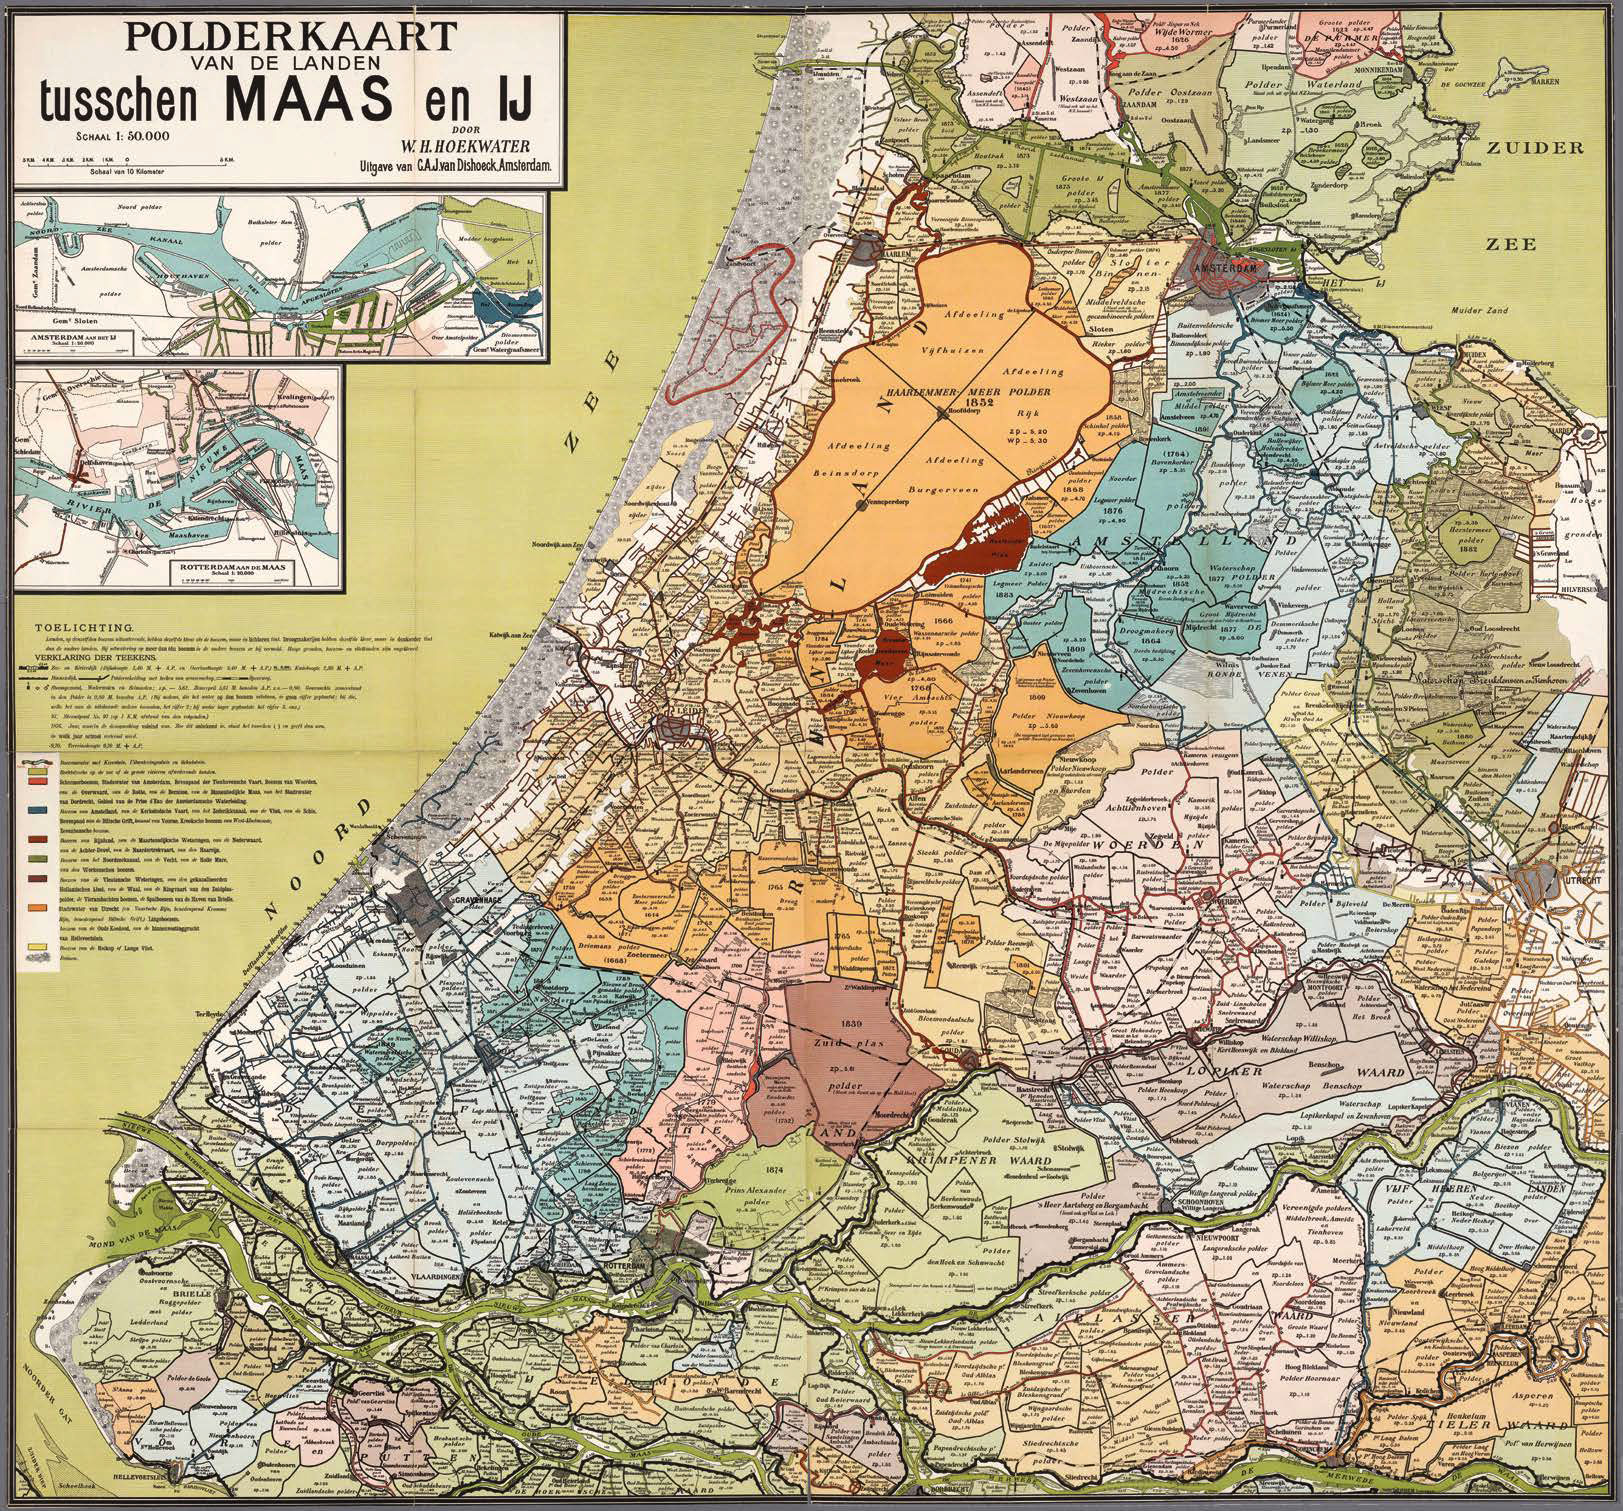 Polderkaart van de landen tusschen Maas en IJ door W.H. Hoekwater uit 1901